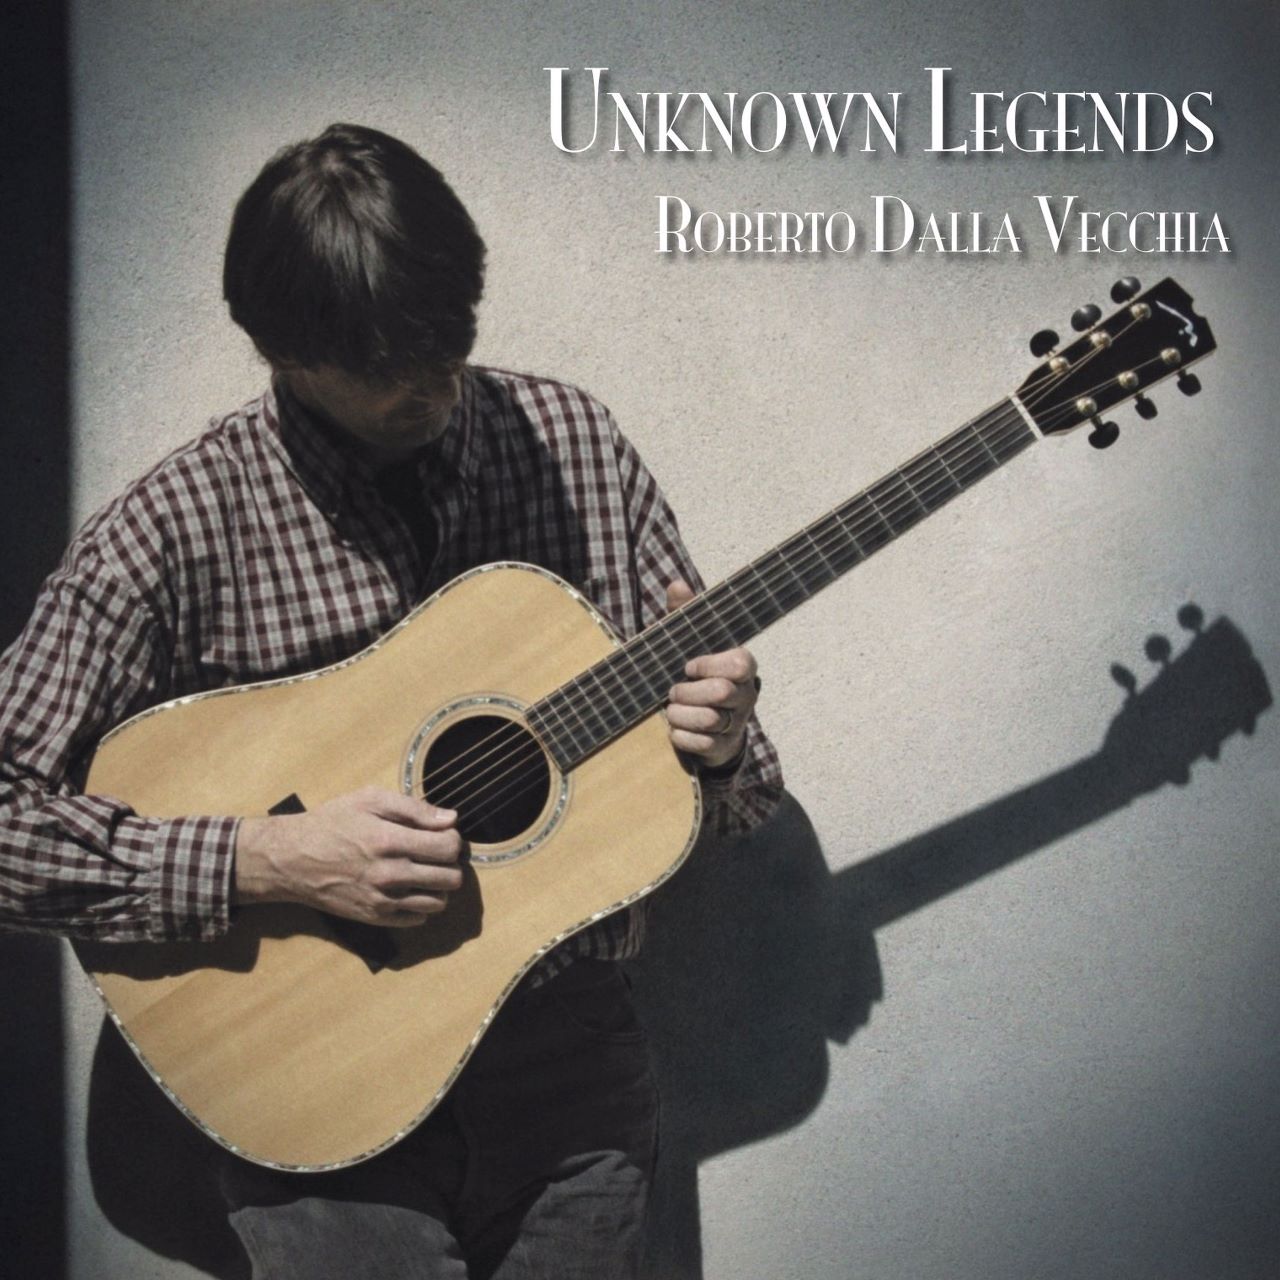 Roberto Dalla Vecchia – Unknown Legends cover album